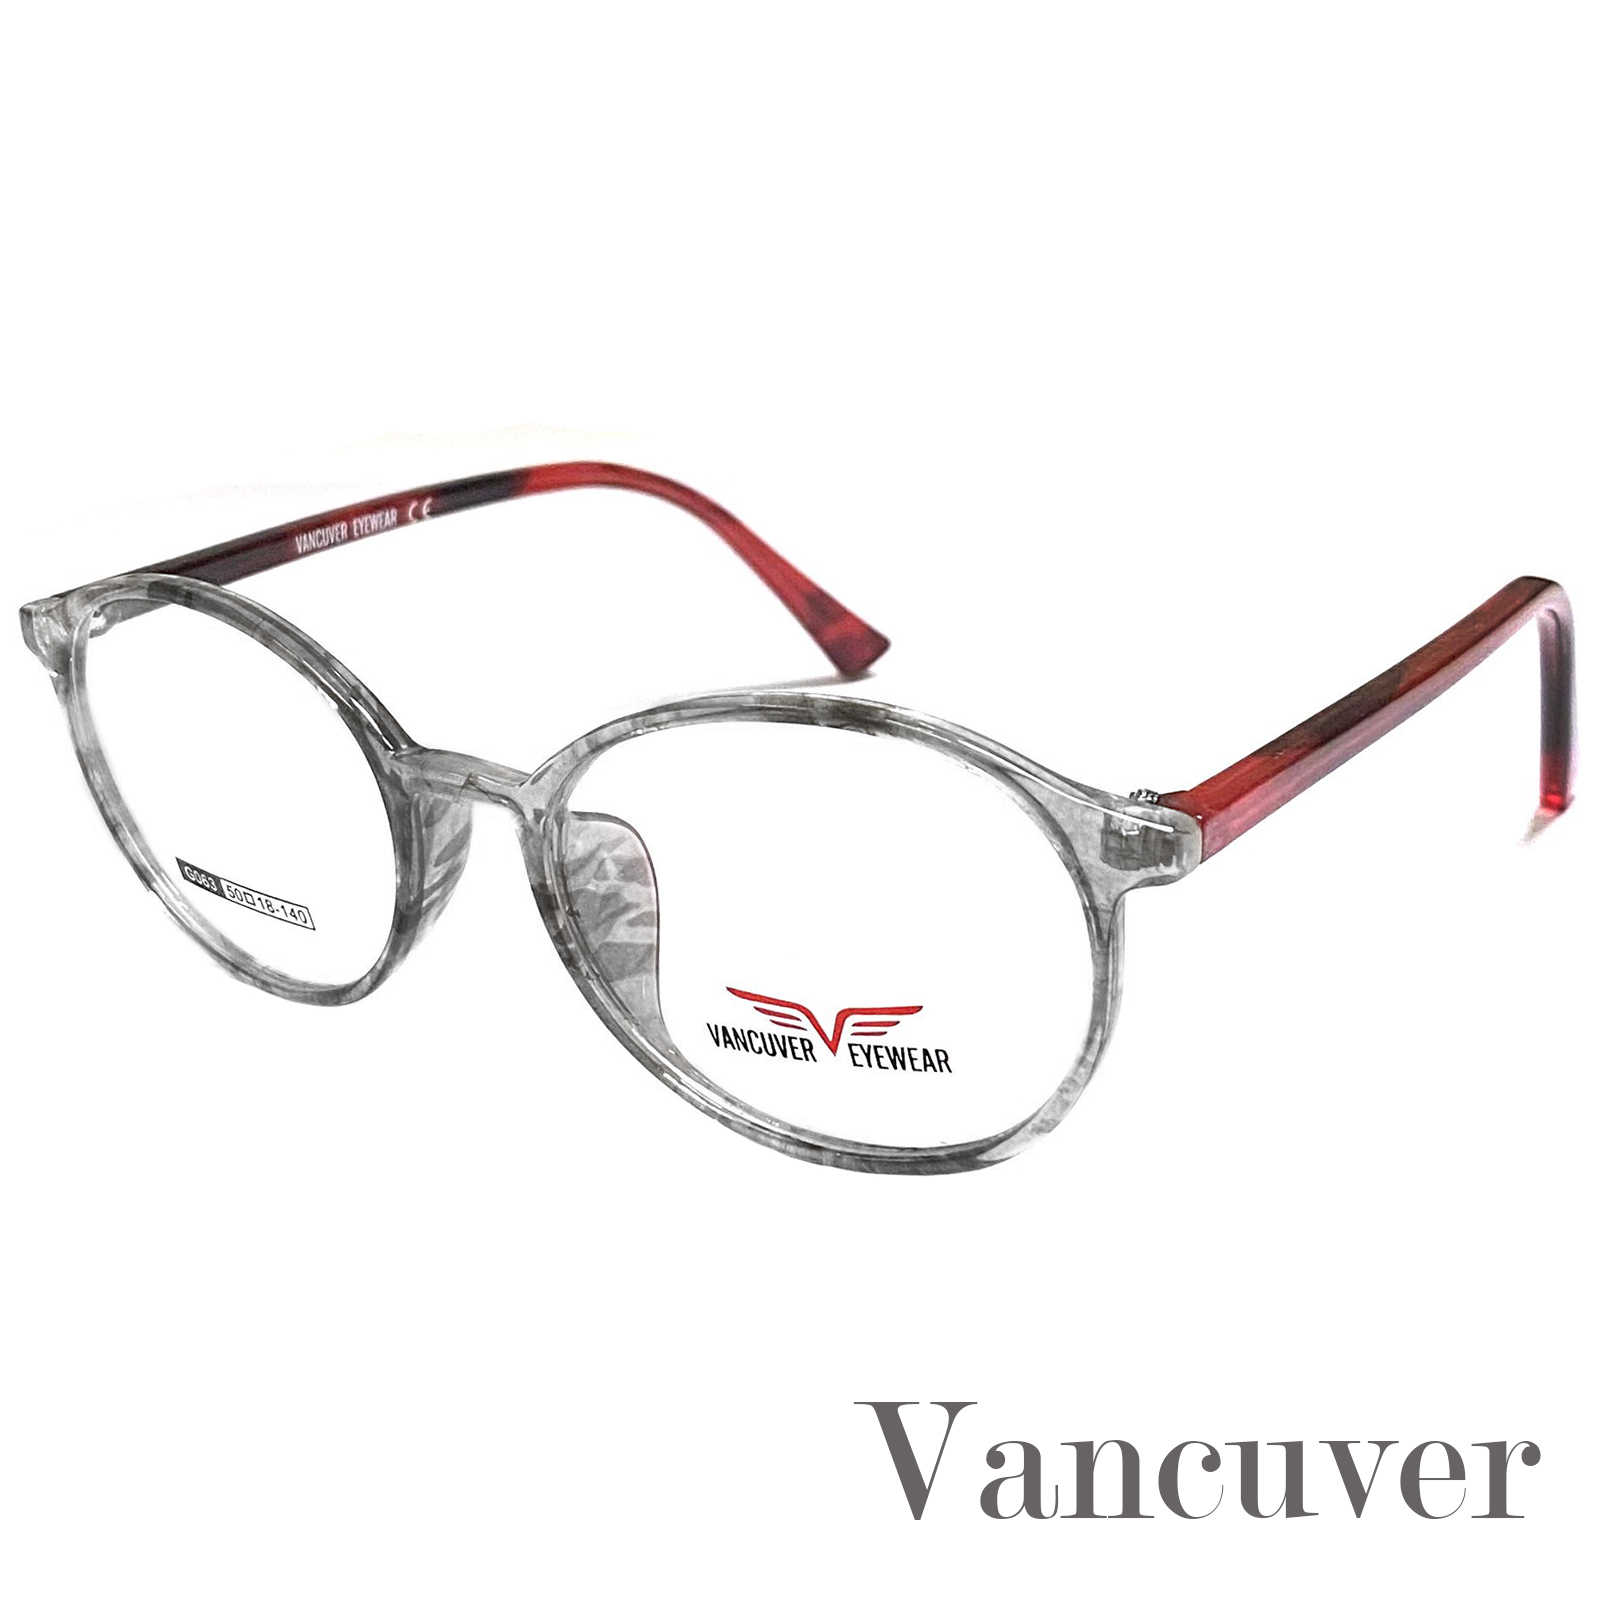 กรอบแว่นตา สำหรับตัดเลนส์ แว่นสายตา Fashion รุ่น Vancuver 063 กรอบเต็ม ขาข้อต่อ วัสดุ พลาสติก พีซี เกรด A รับตัดเลนส์ทุกชนิด